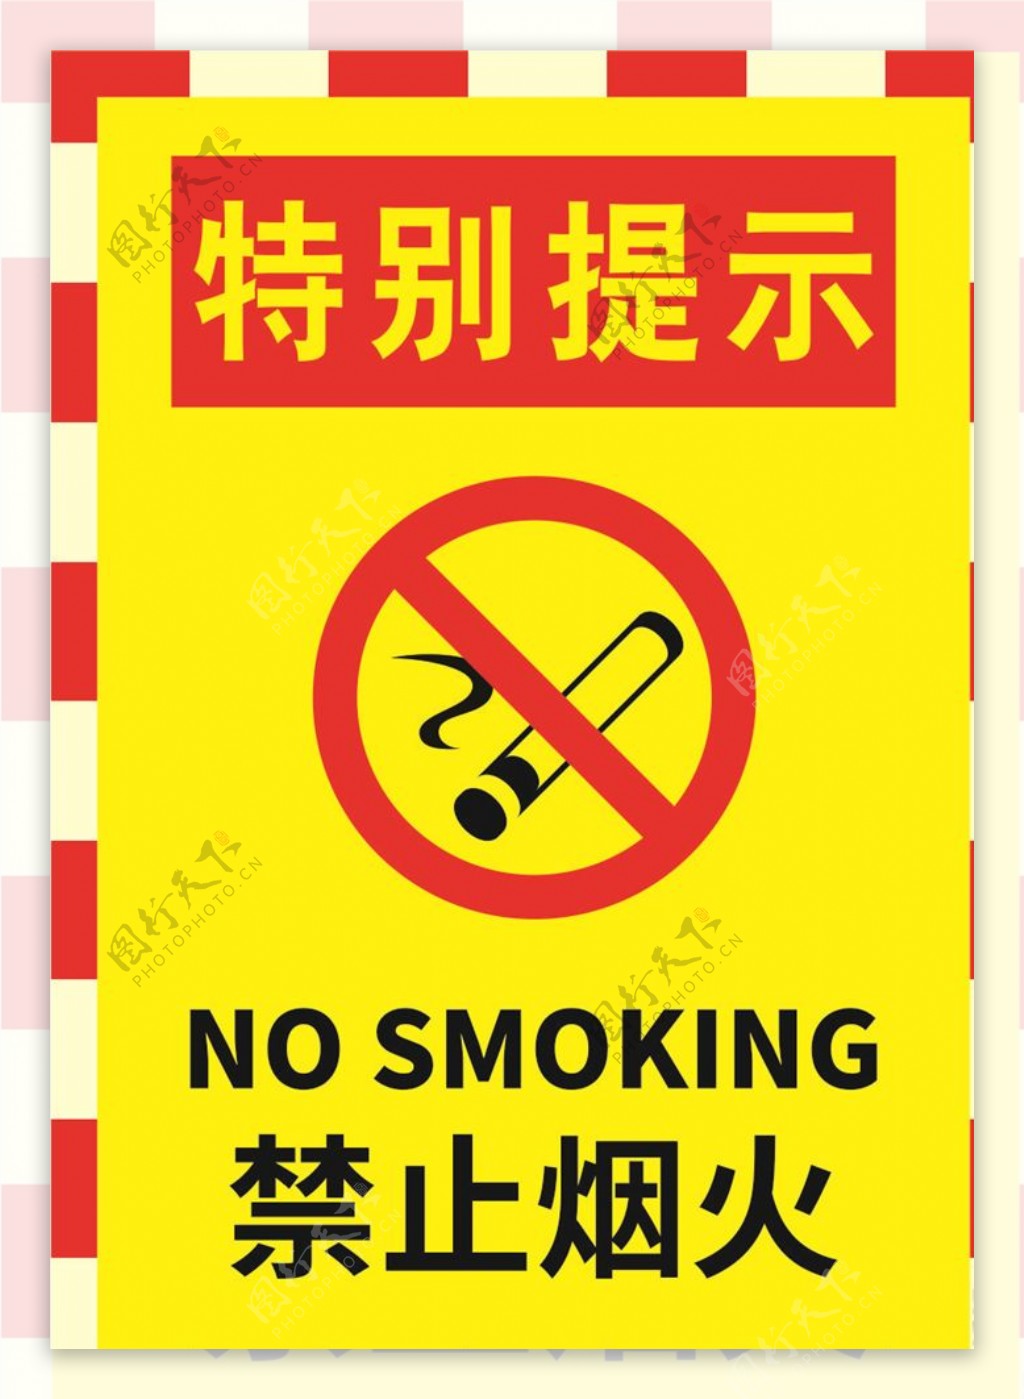 禁止烟火警示标牌